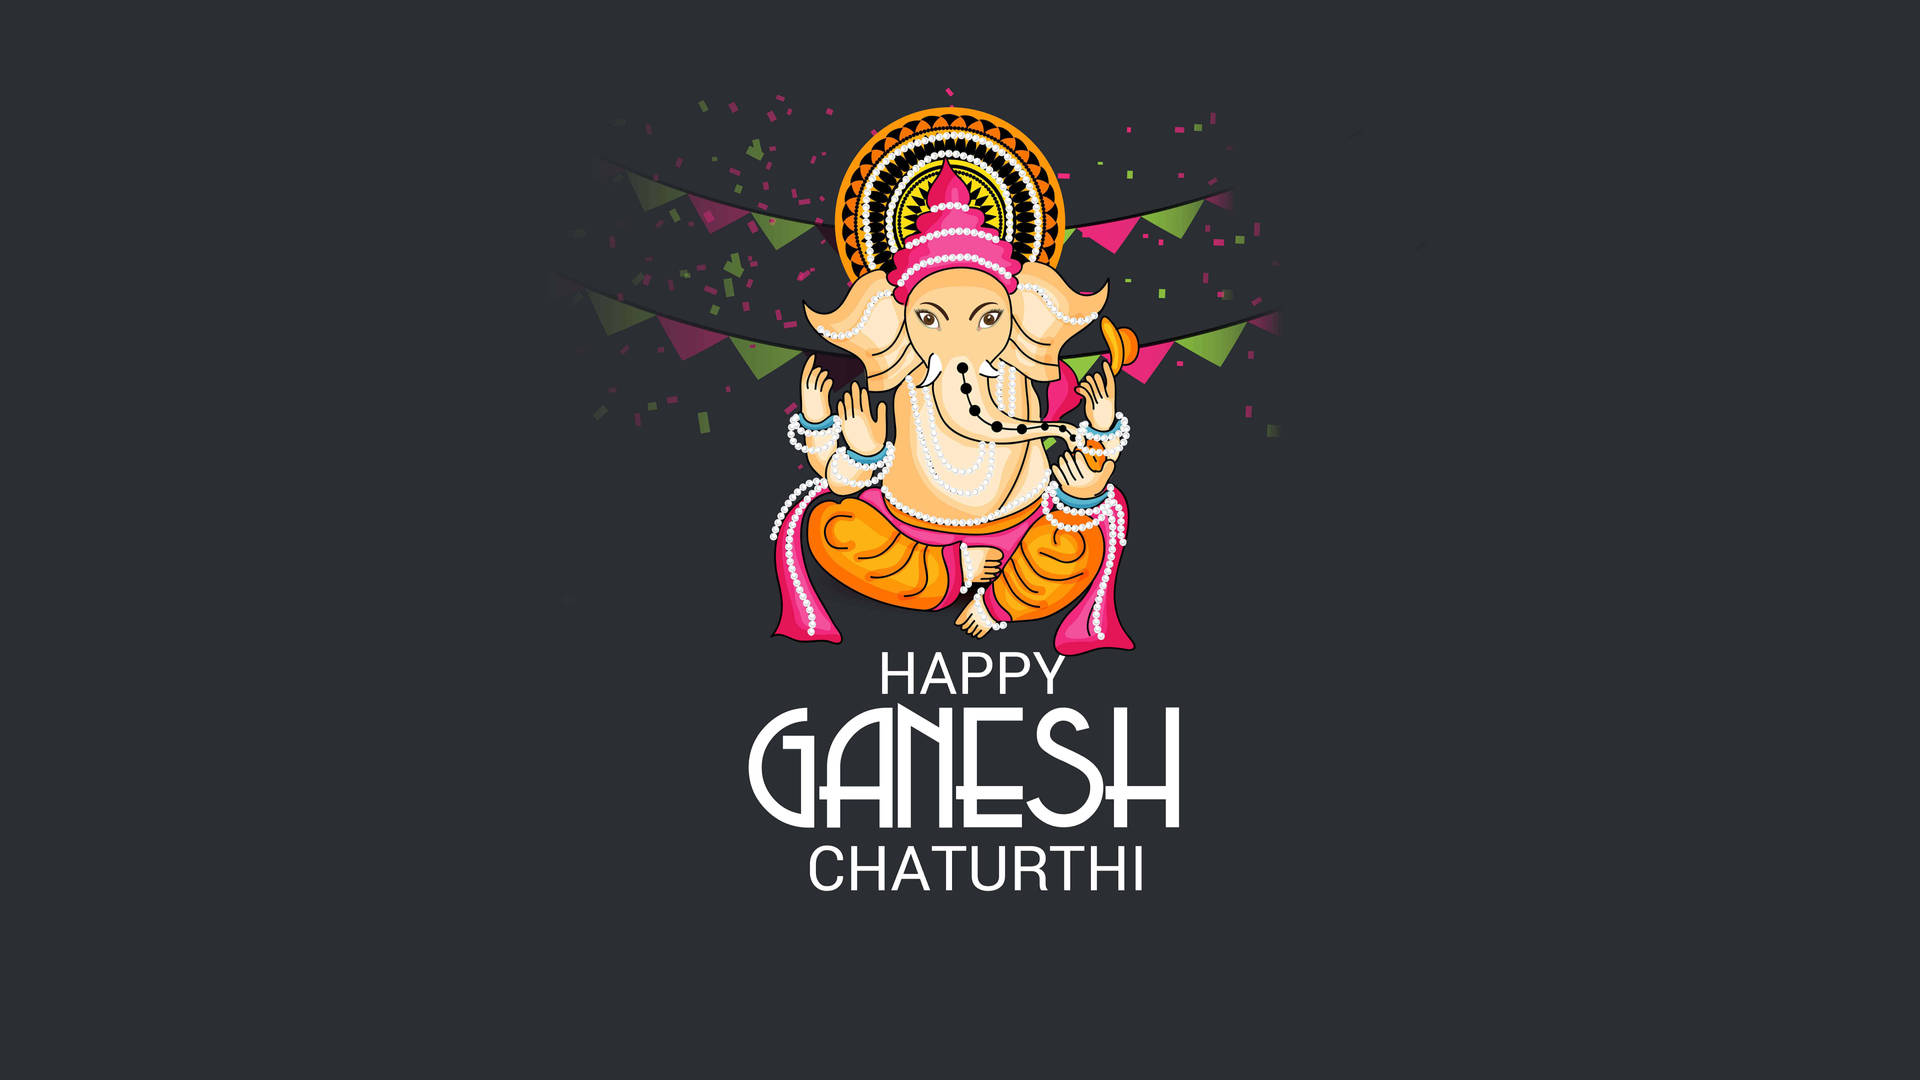 Free Ganesh Chaturthi Wallpaper Downloads, [100+] Ganesh Chaturthi  Wallpapers for FREE 